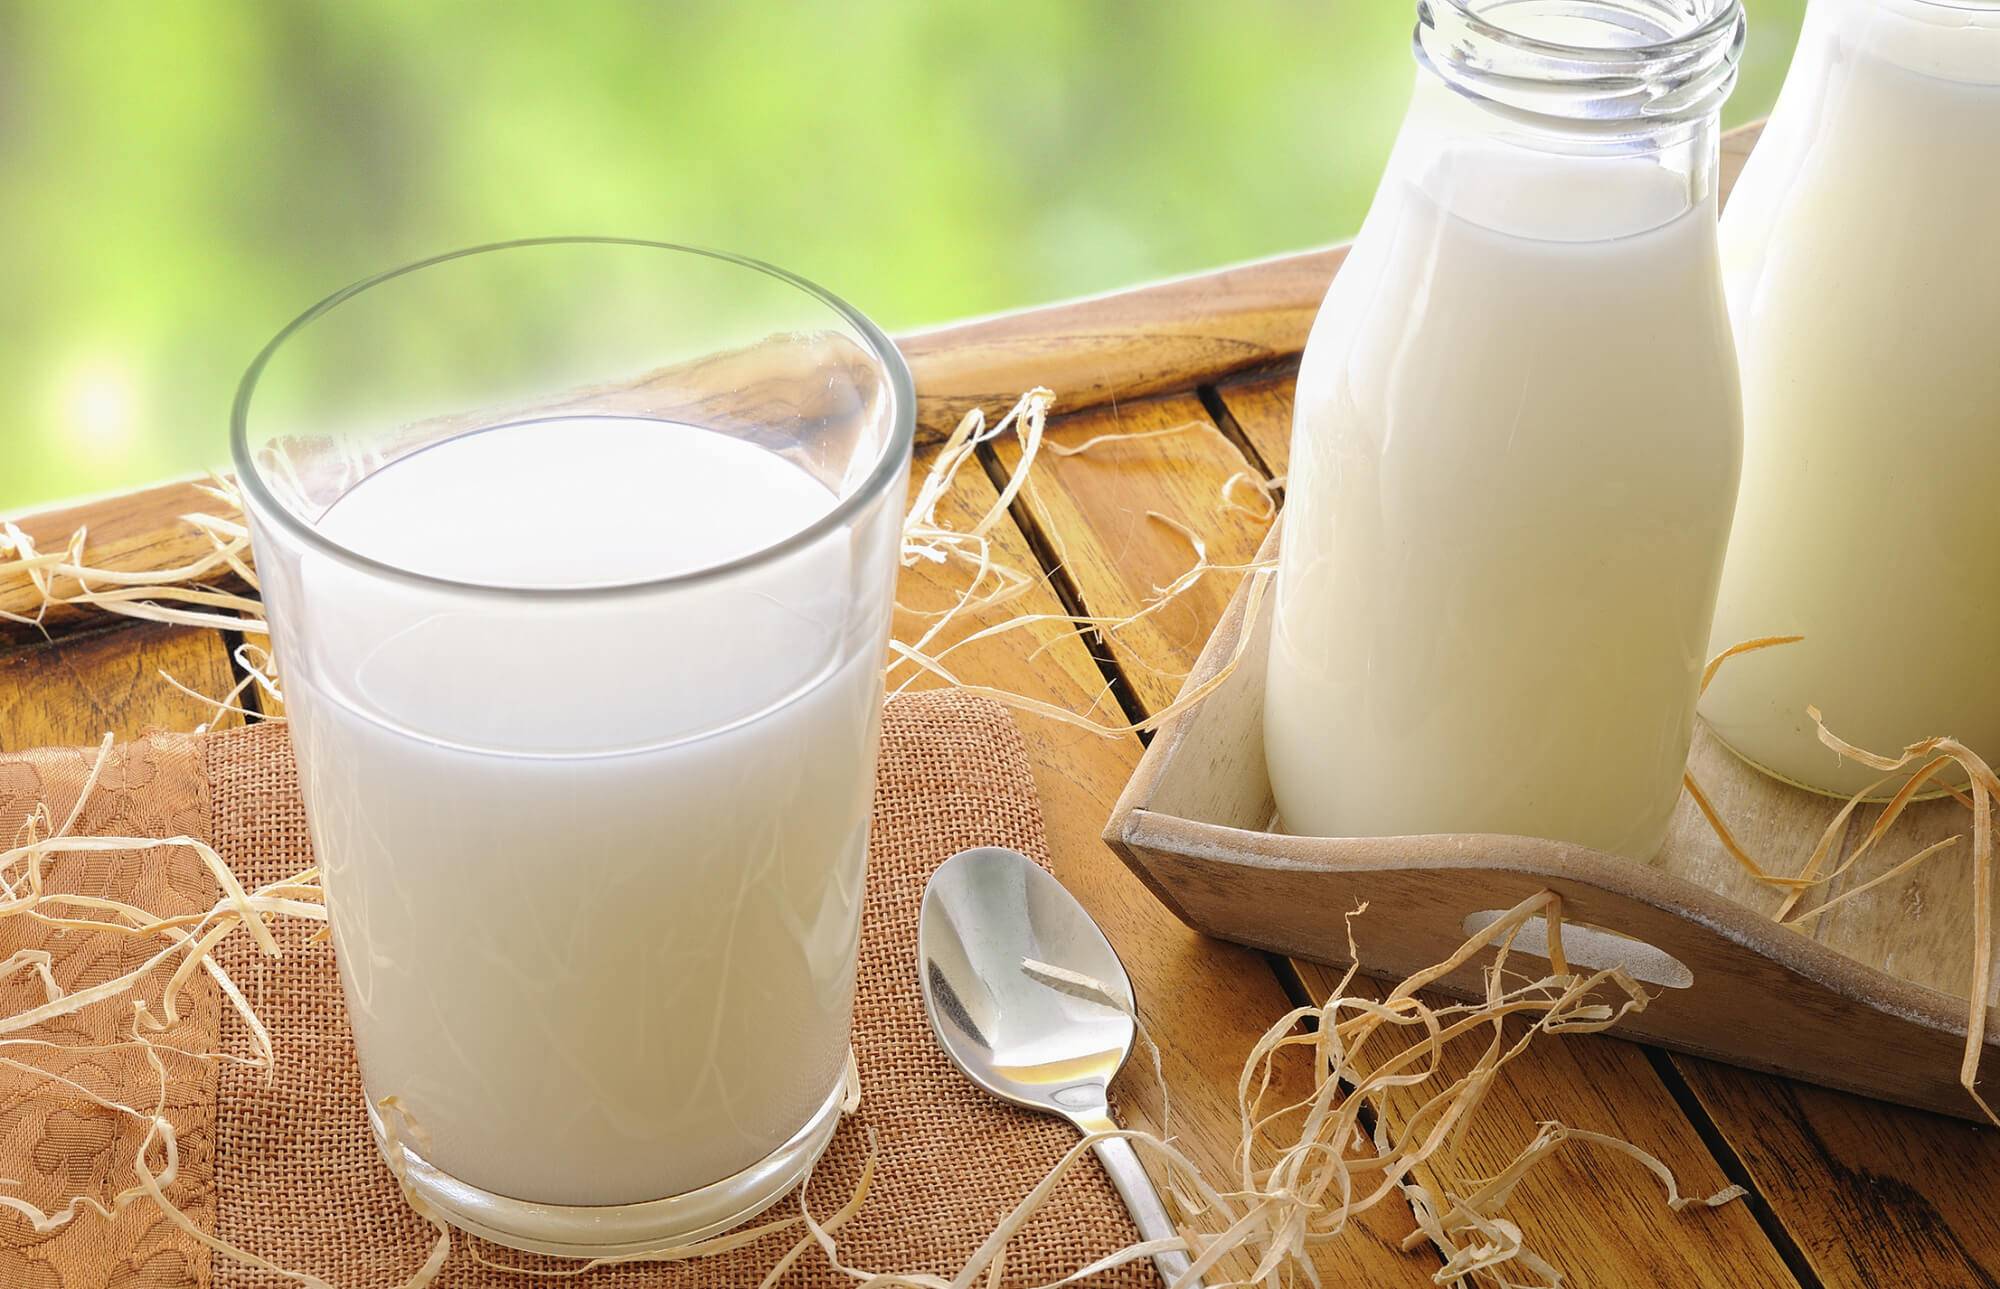 Показатели качества молока